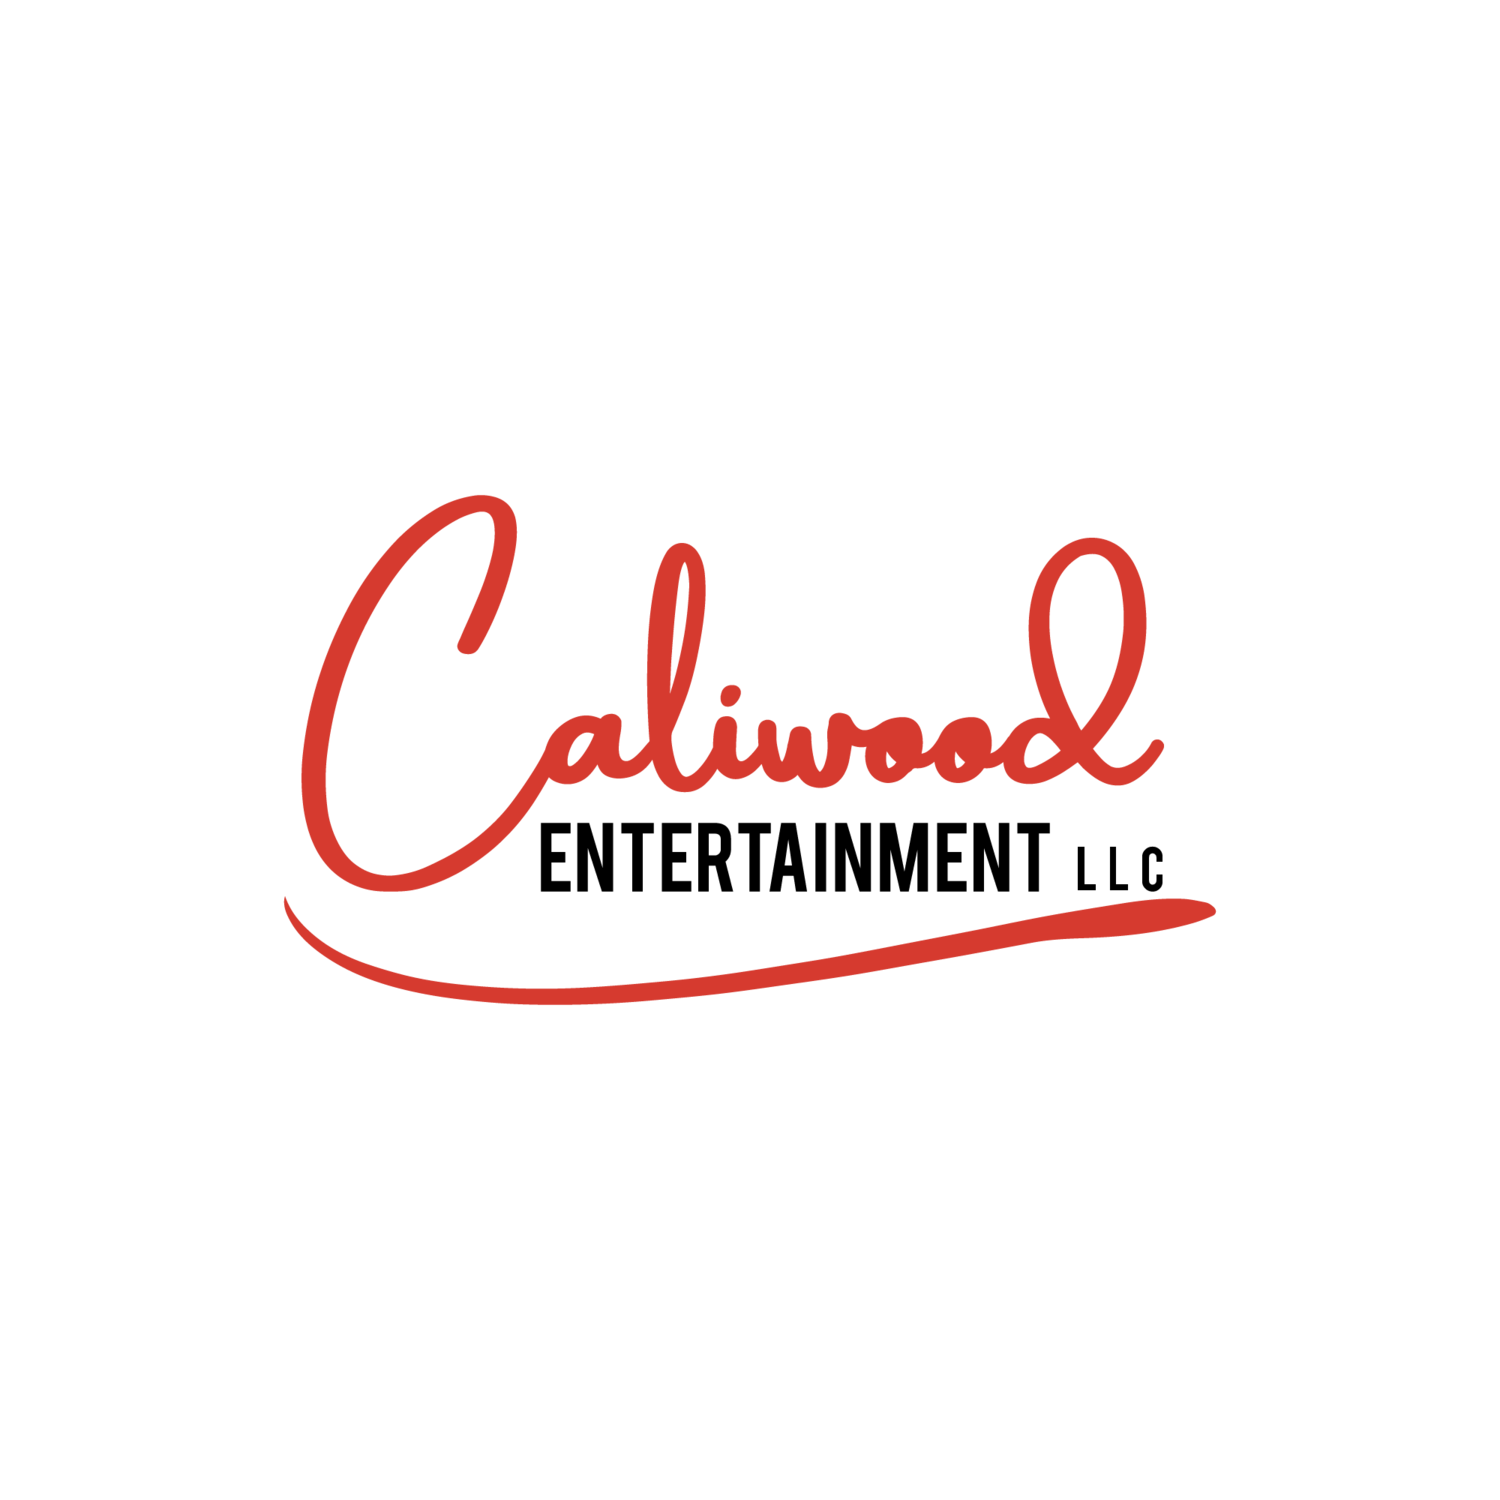 Caliwoodentertainment